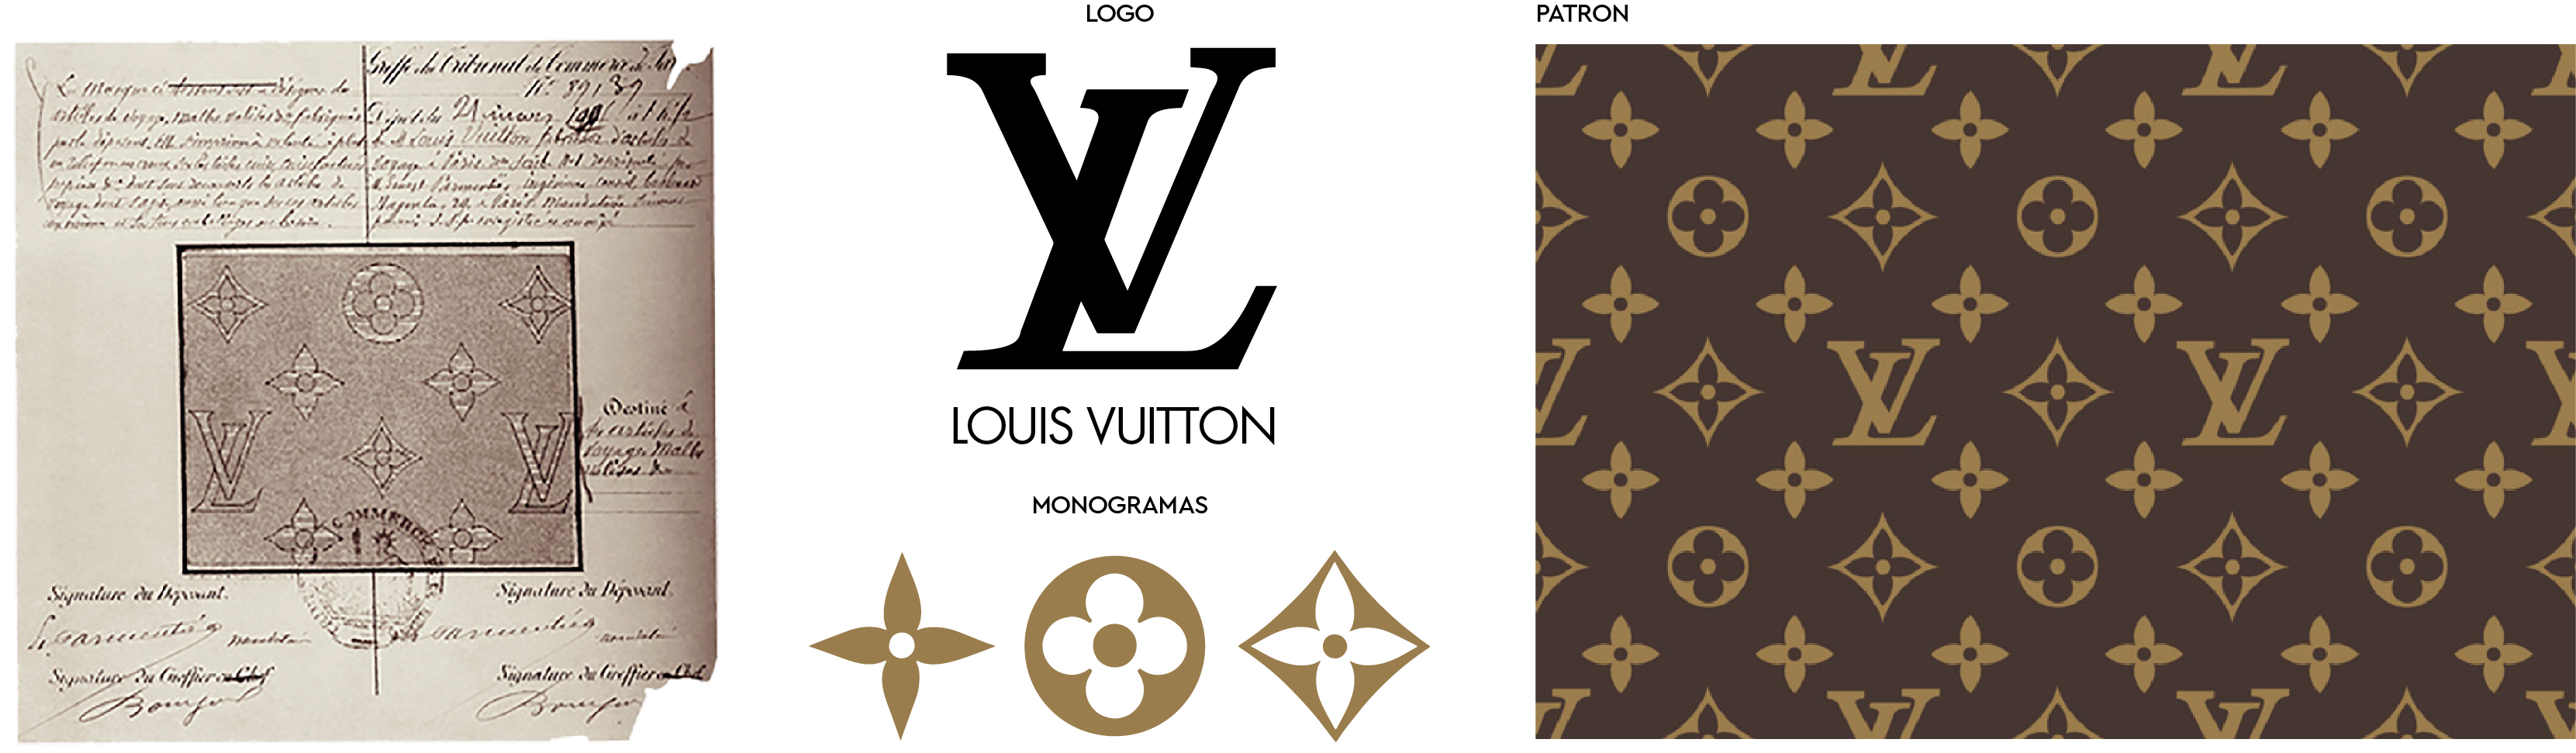 Louis Vuitton La historia detrás del hombre que inventó el lujo moderno